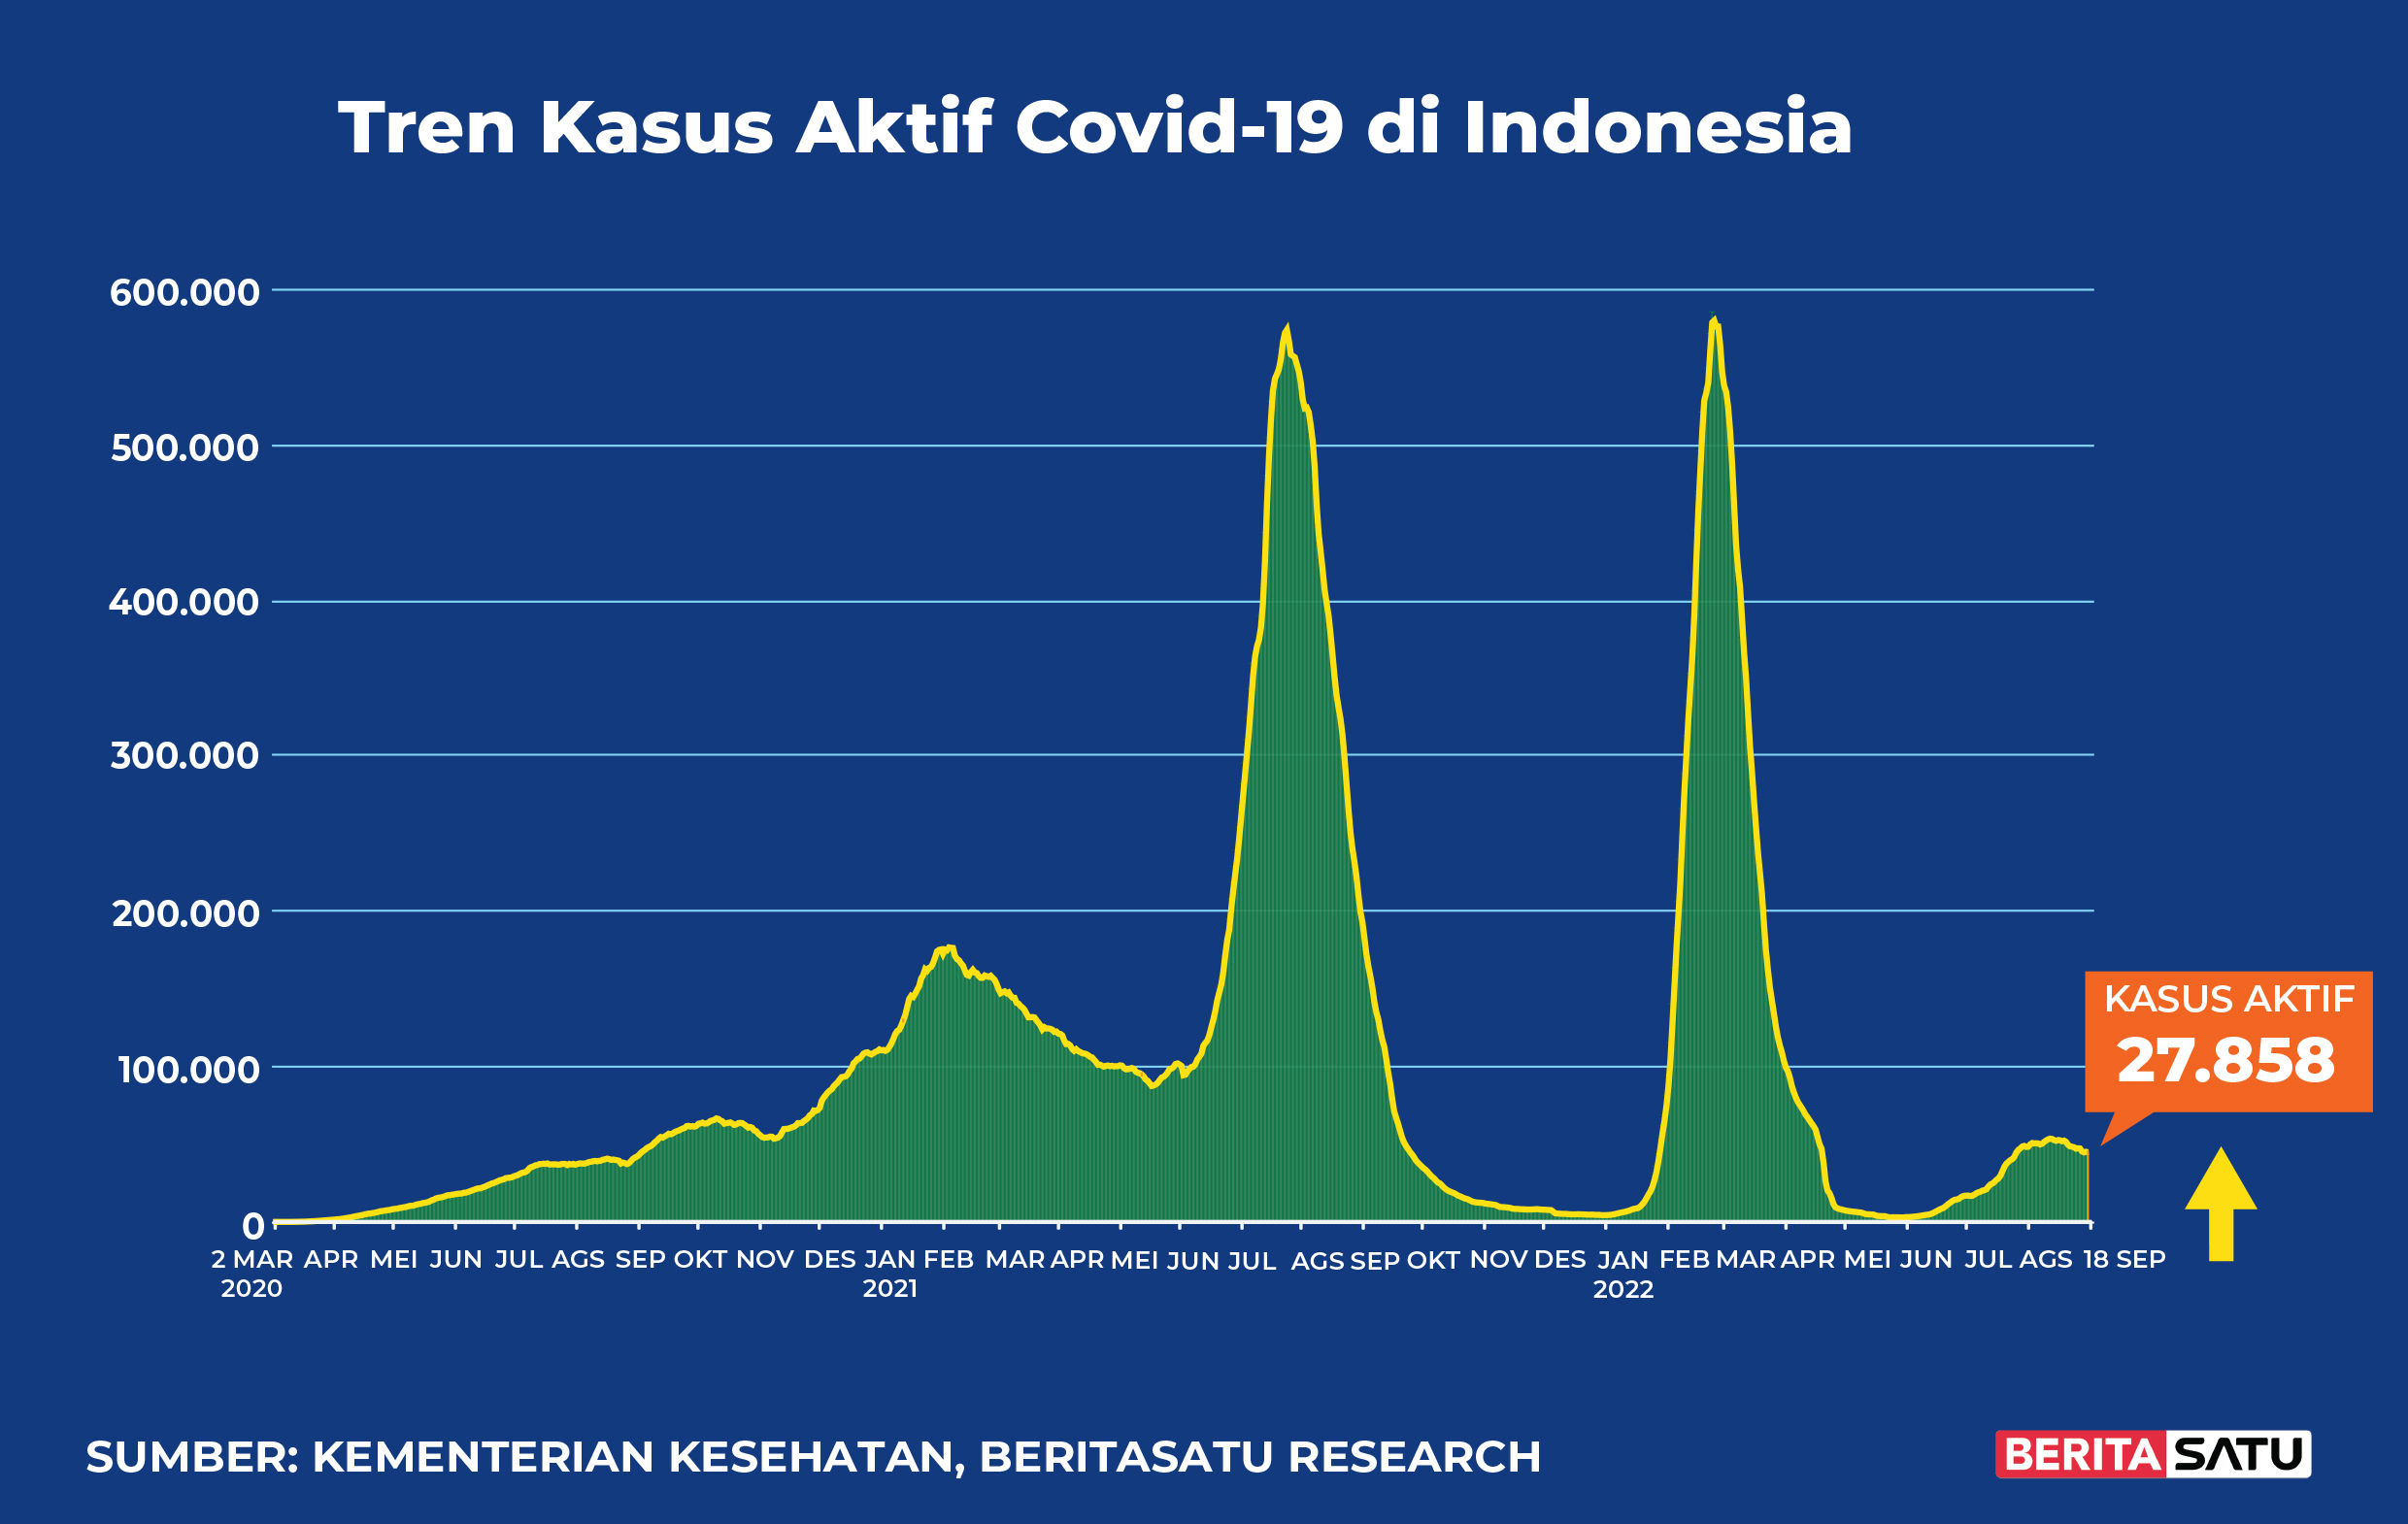 Kasus Aktif Covid-19 di Indonesia sampai 18 September 2022